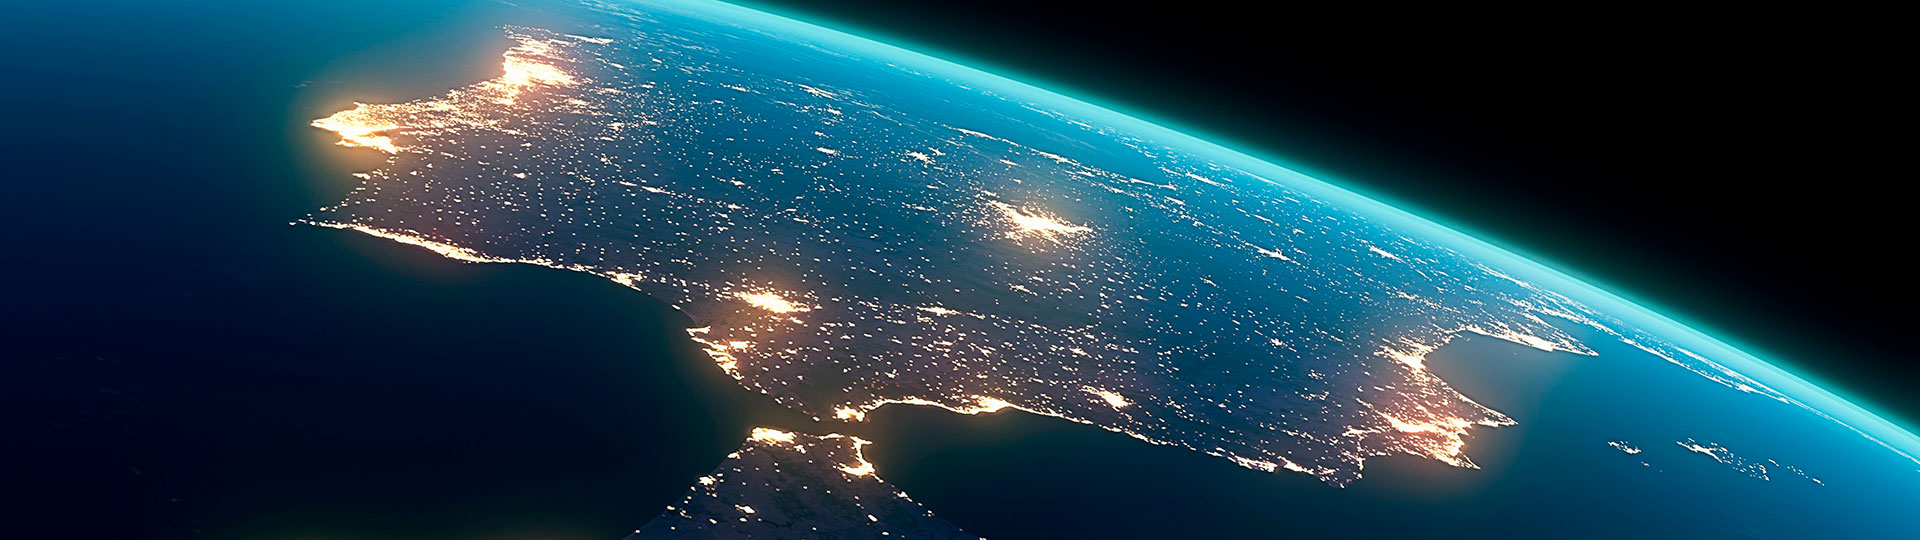 Półwysep Iberyjski widziany z kosmosu